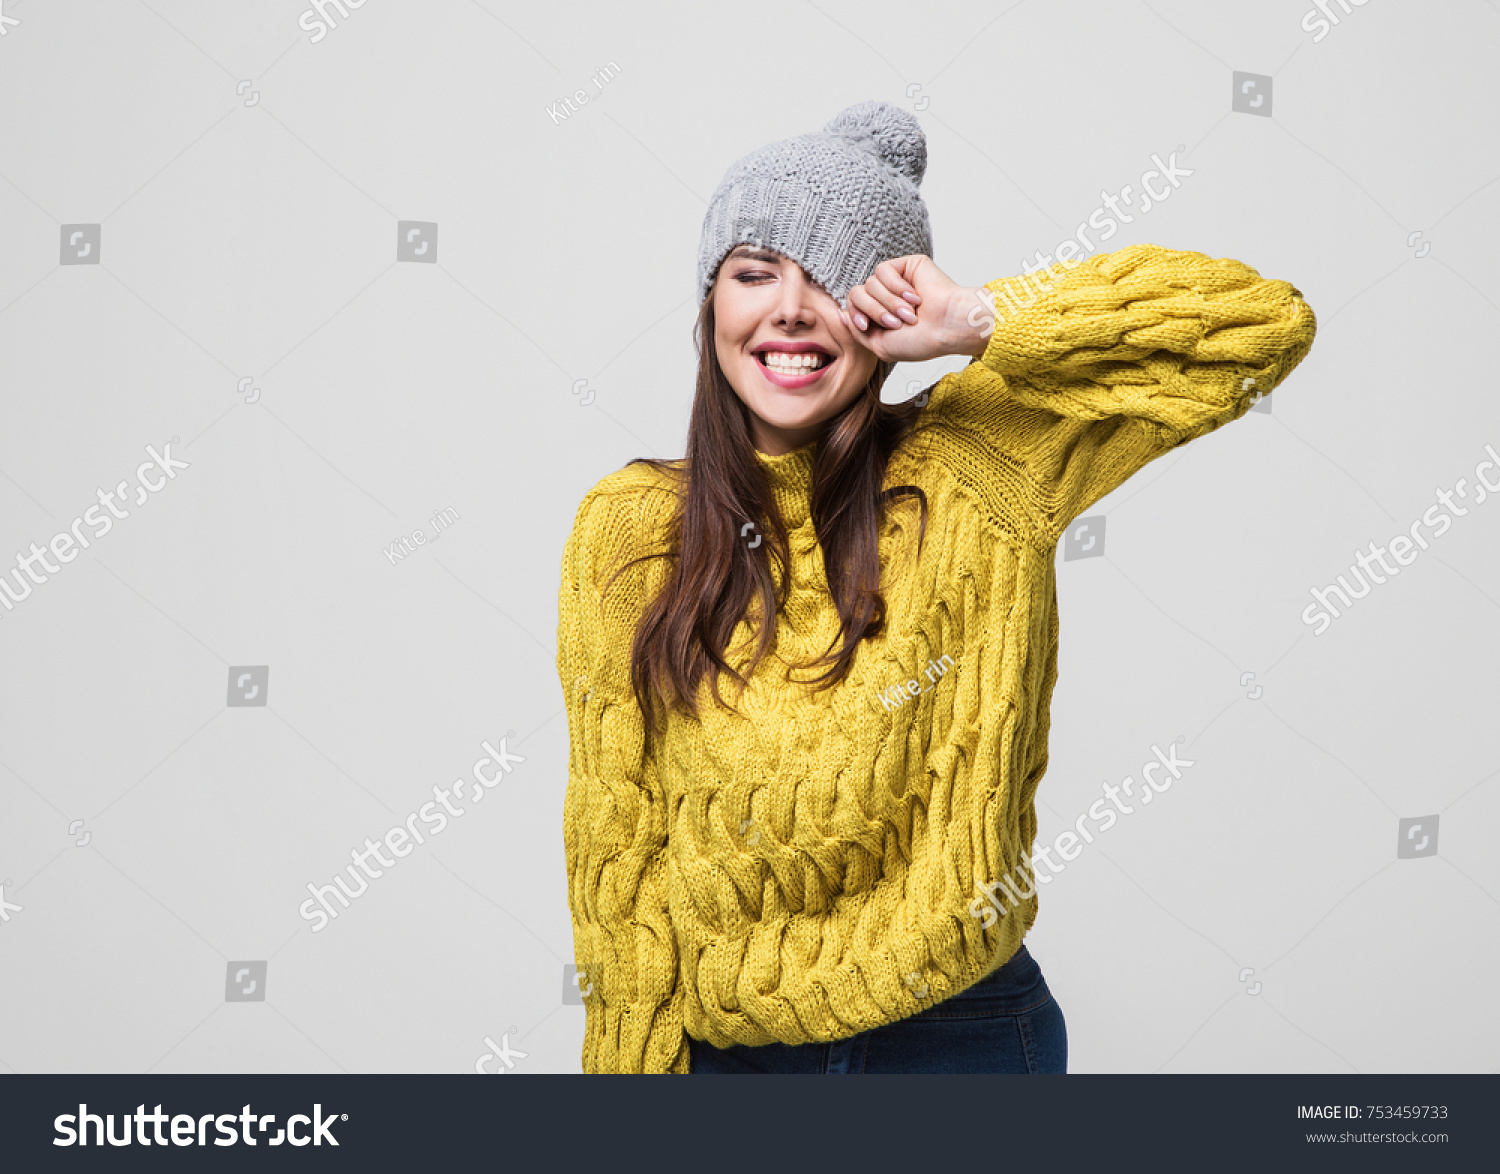 美しい女性の冬のポートレート 温かい服を着て楽しそうな笑顔の女の子 の写真素材 今すぐ編集